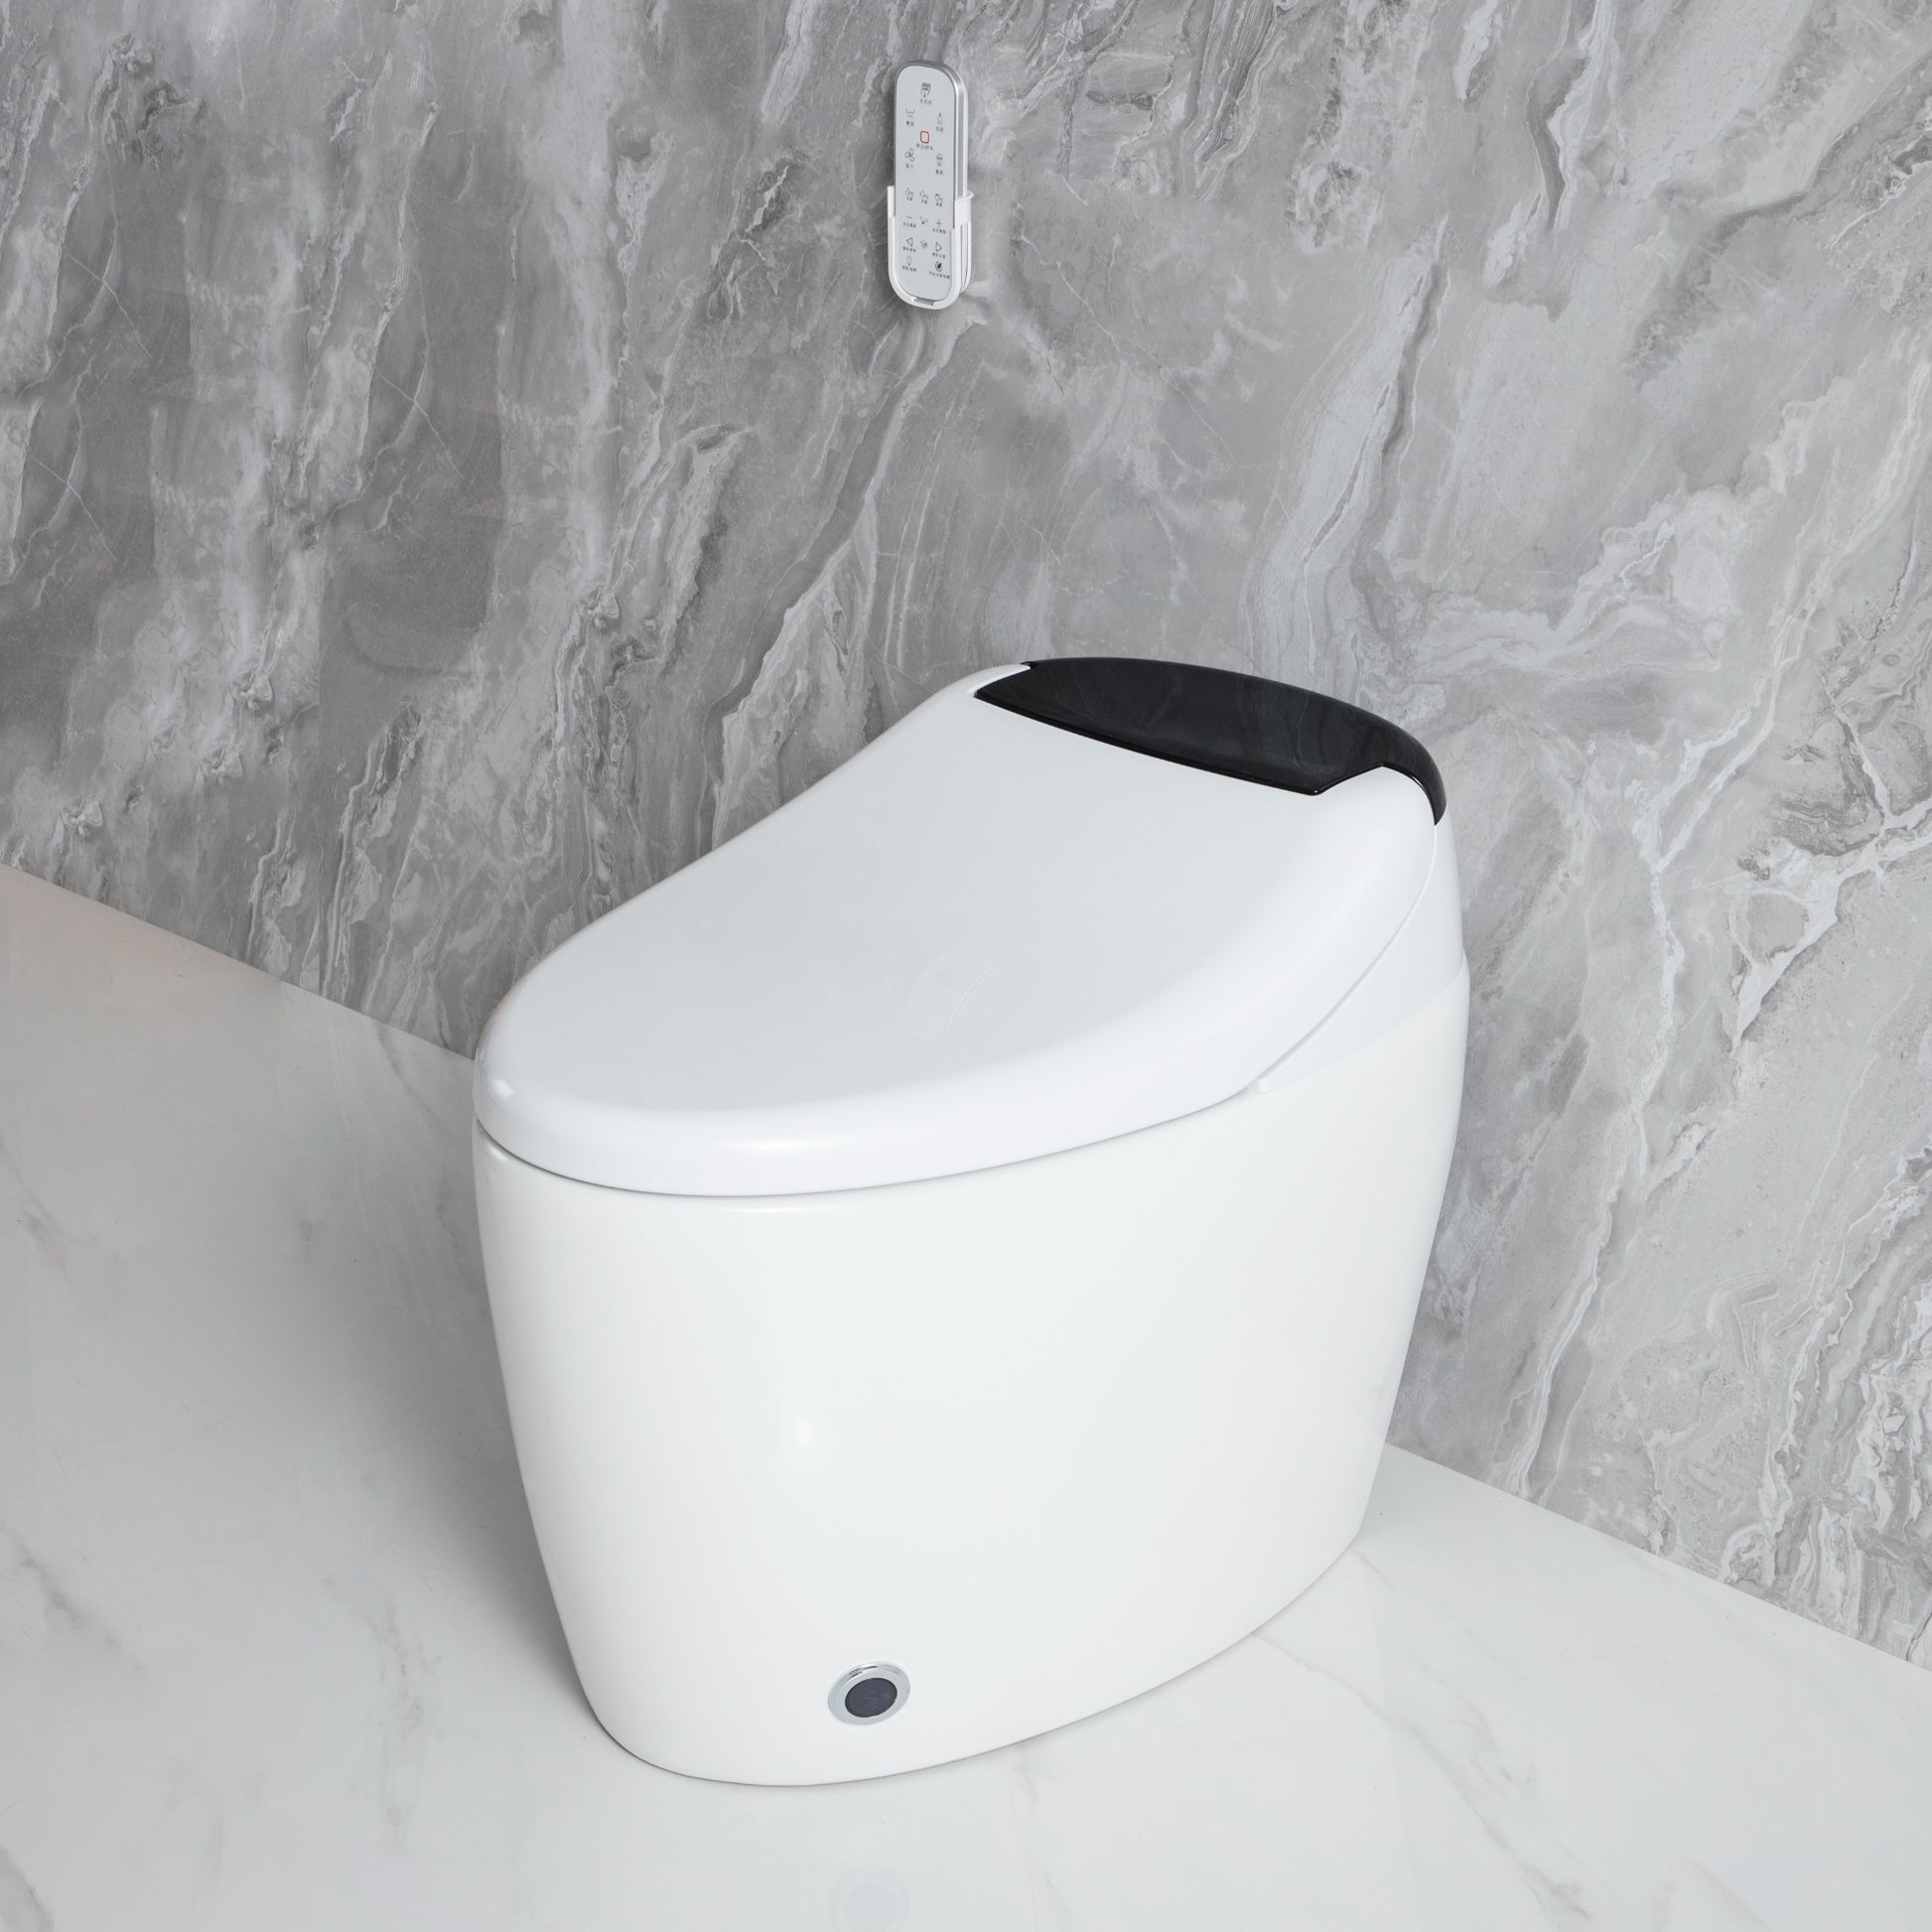 Smart Toilet with Bidet Built in, Smart Bidet